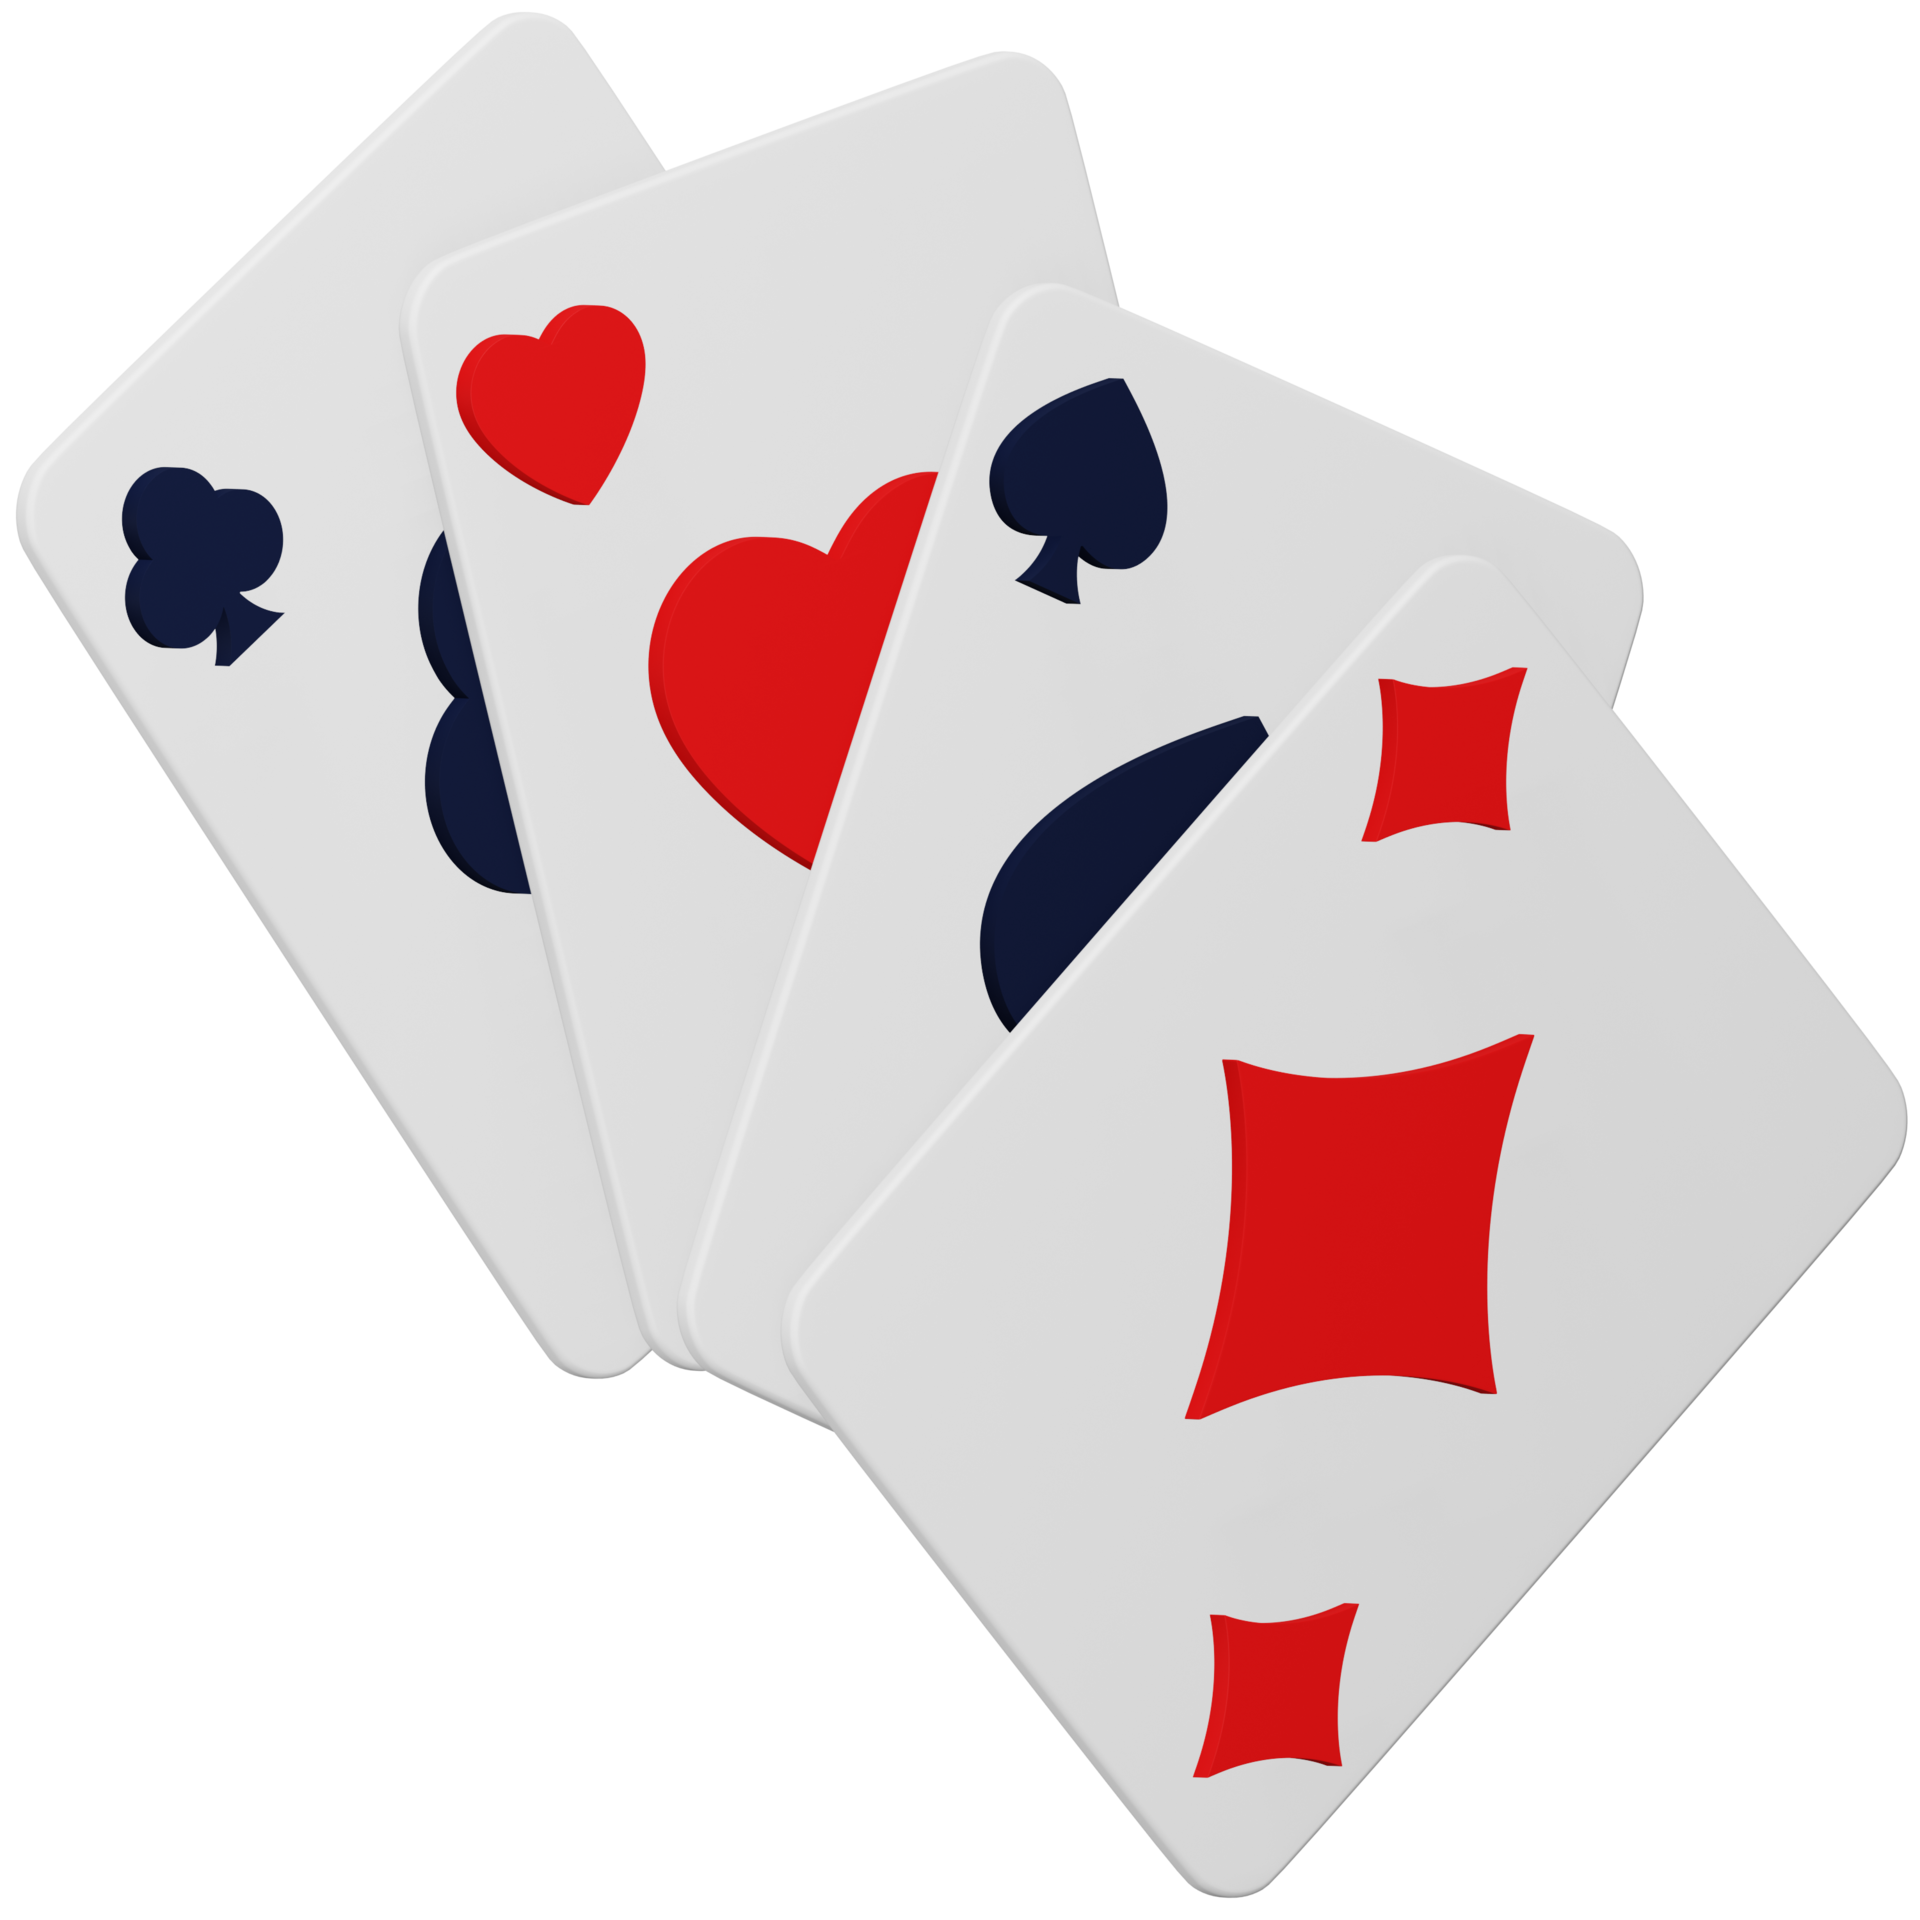 Jogo de pôquer de cartas de baralho de quatro ases símbolos de jogos de  azar 3d realistas clubes e espaços corações e diamantes cartão de pôquer de  cassino renderização em 3d